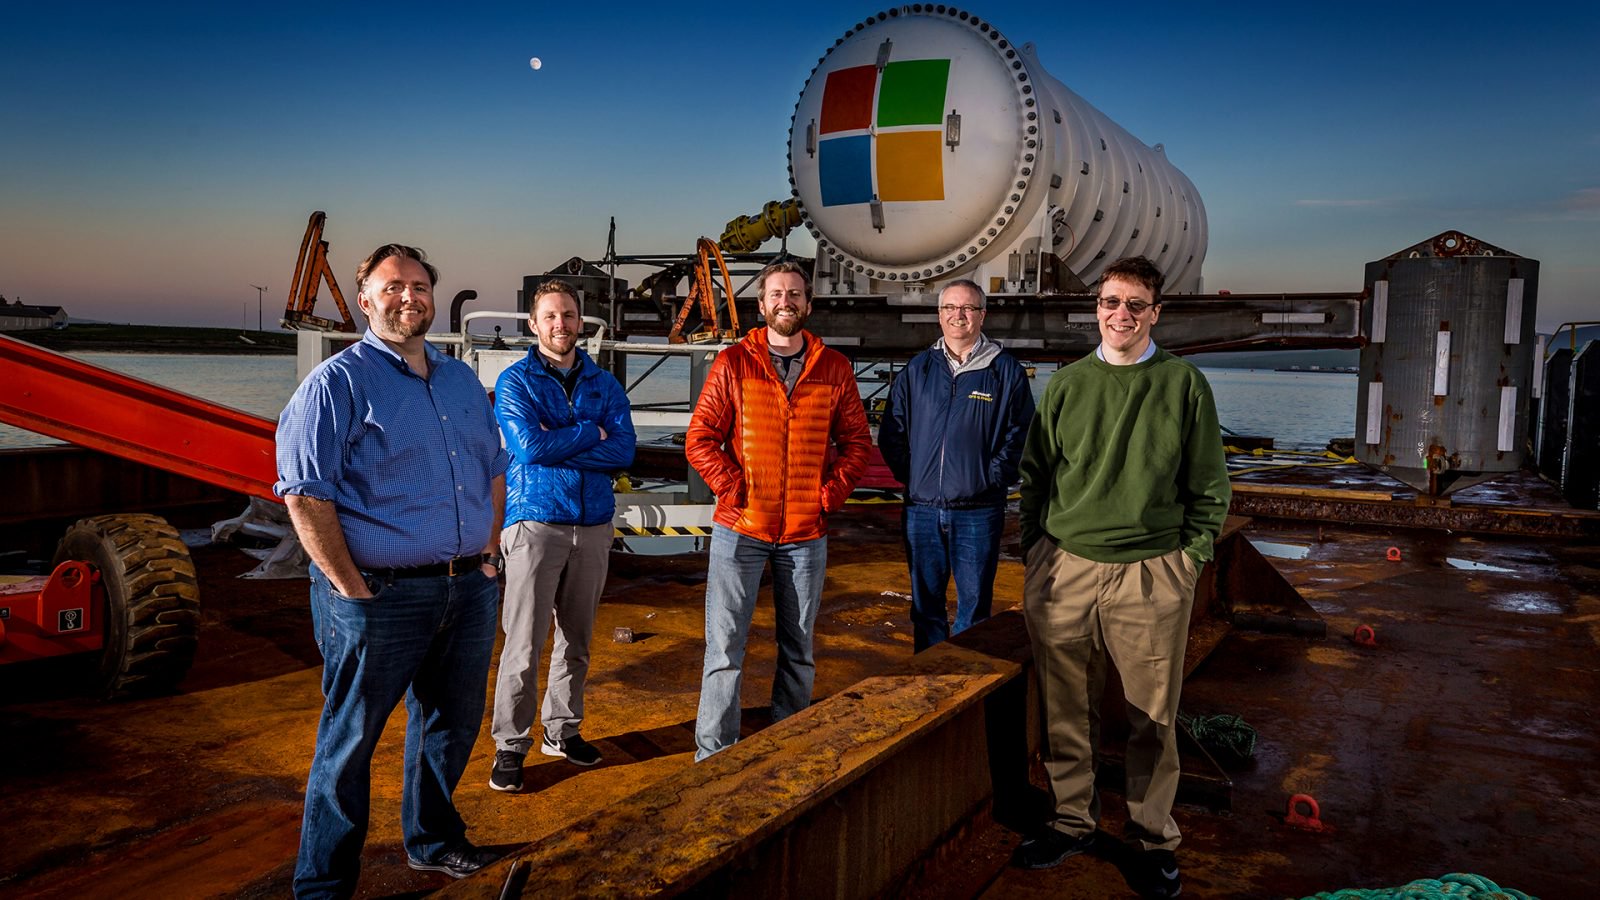 Команда Microsoft Project Natick (слева направо): Майк Шепперд, старший R&D-инженер, Сэм Огден, старший инженер-программист, Спенсер Фауэрс, страший технический специалист, Эрик Петерсон, исследователь, Бен Катлер, менеджер проекта. Фото: Скотт Эклунд /Red Box Pictures.